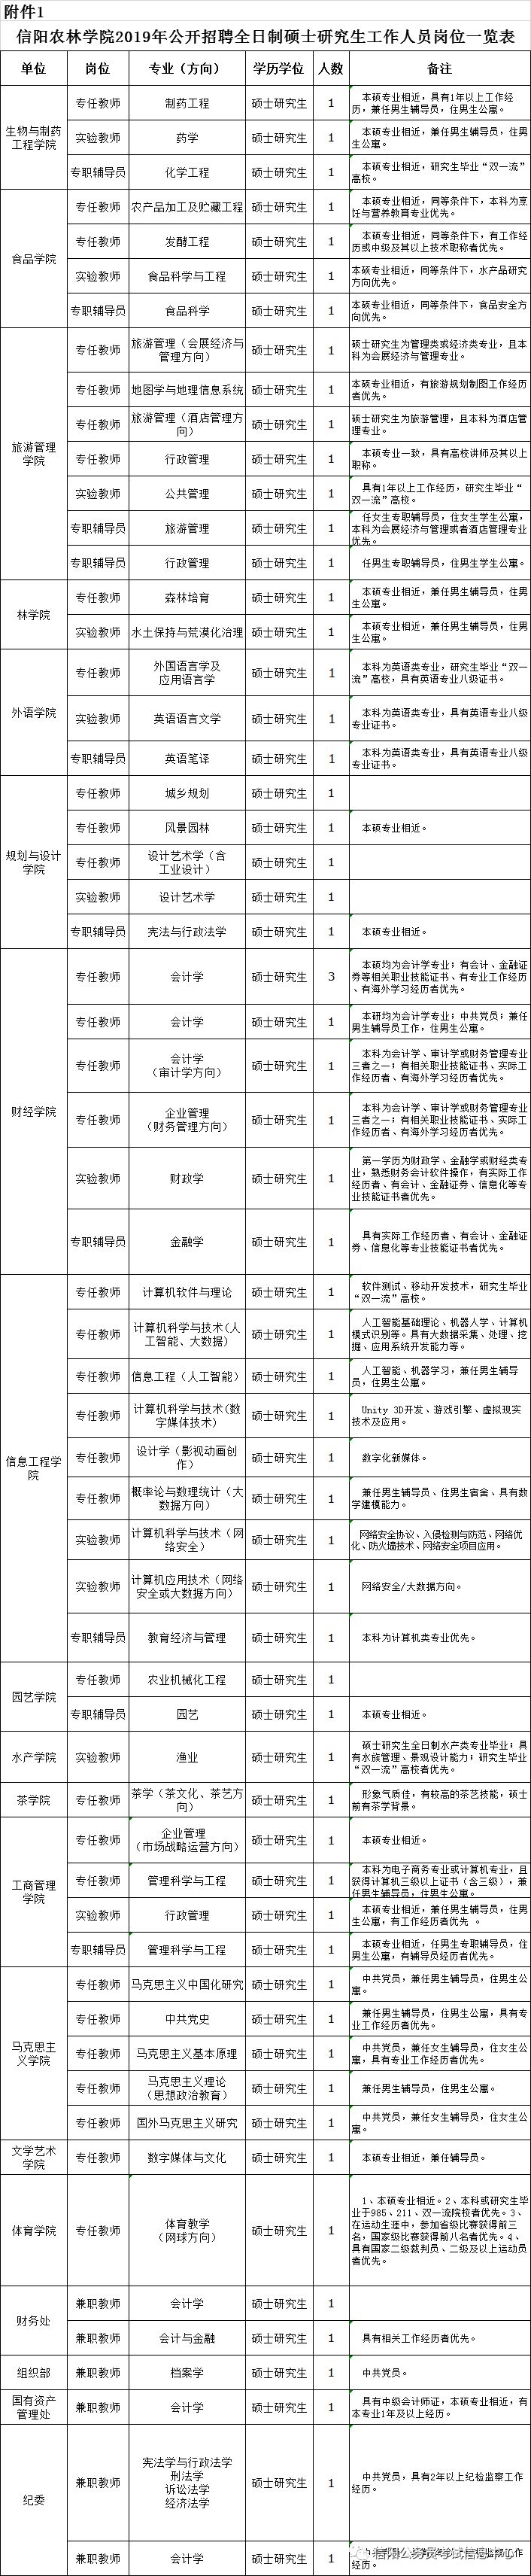 信阳农林学院2019年公开招聘全日制硕士研究生工作人员公告